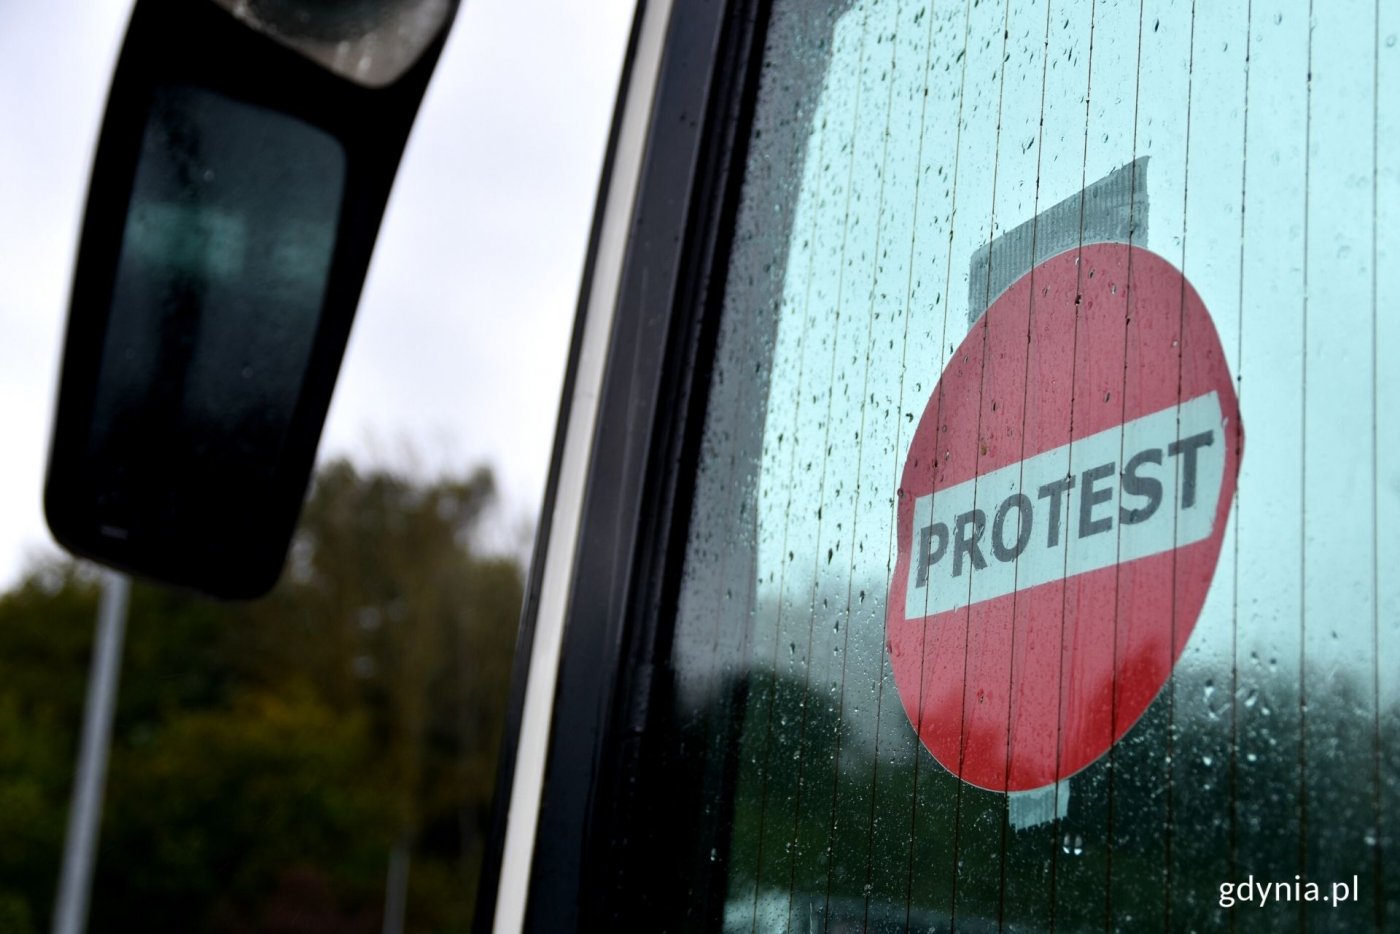 Przewoźnicy autokarowi protestują na ulicach Gdyni. Pojazdy są obklejone kartkami z napisem: Protest. Fot. Marcin Mielewski